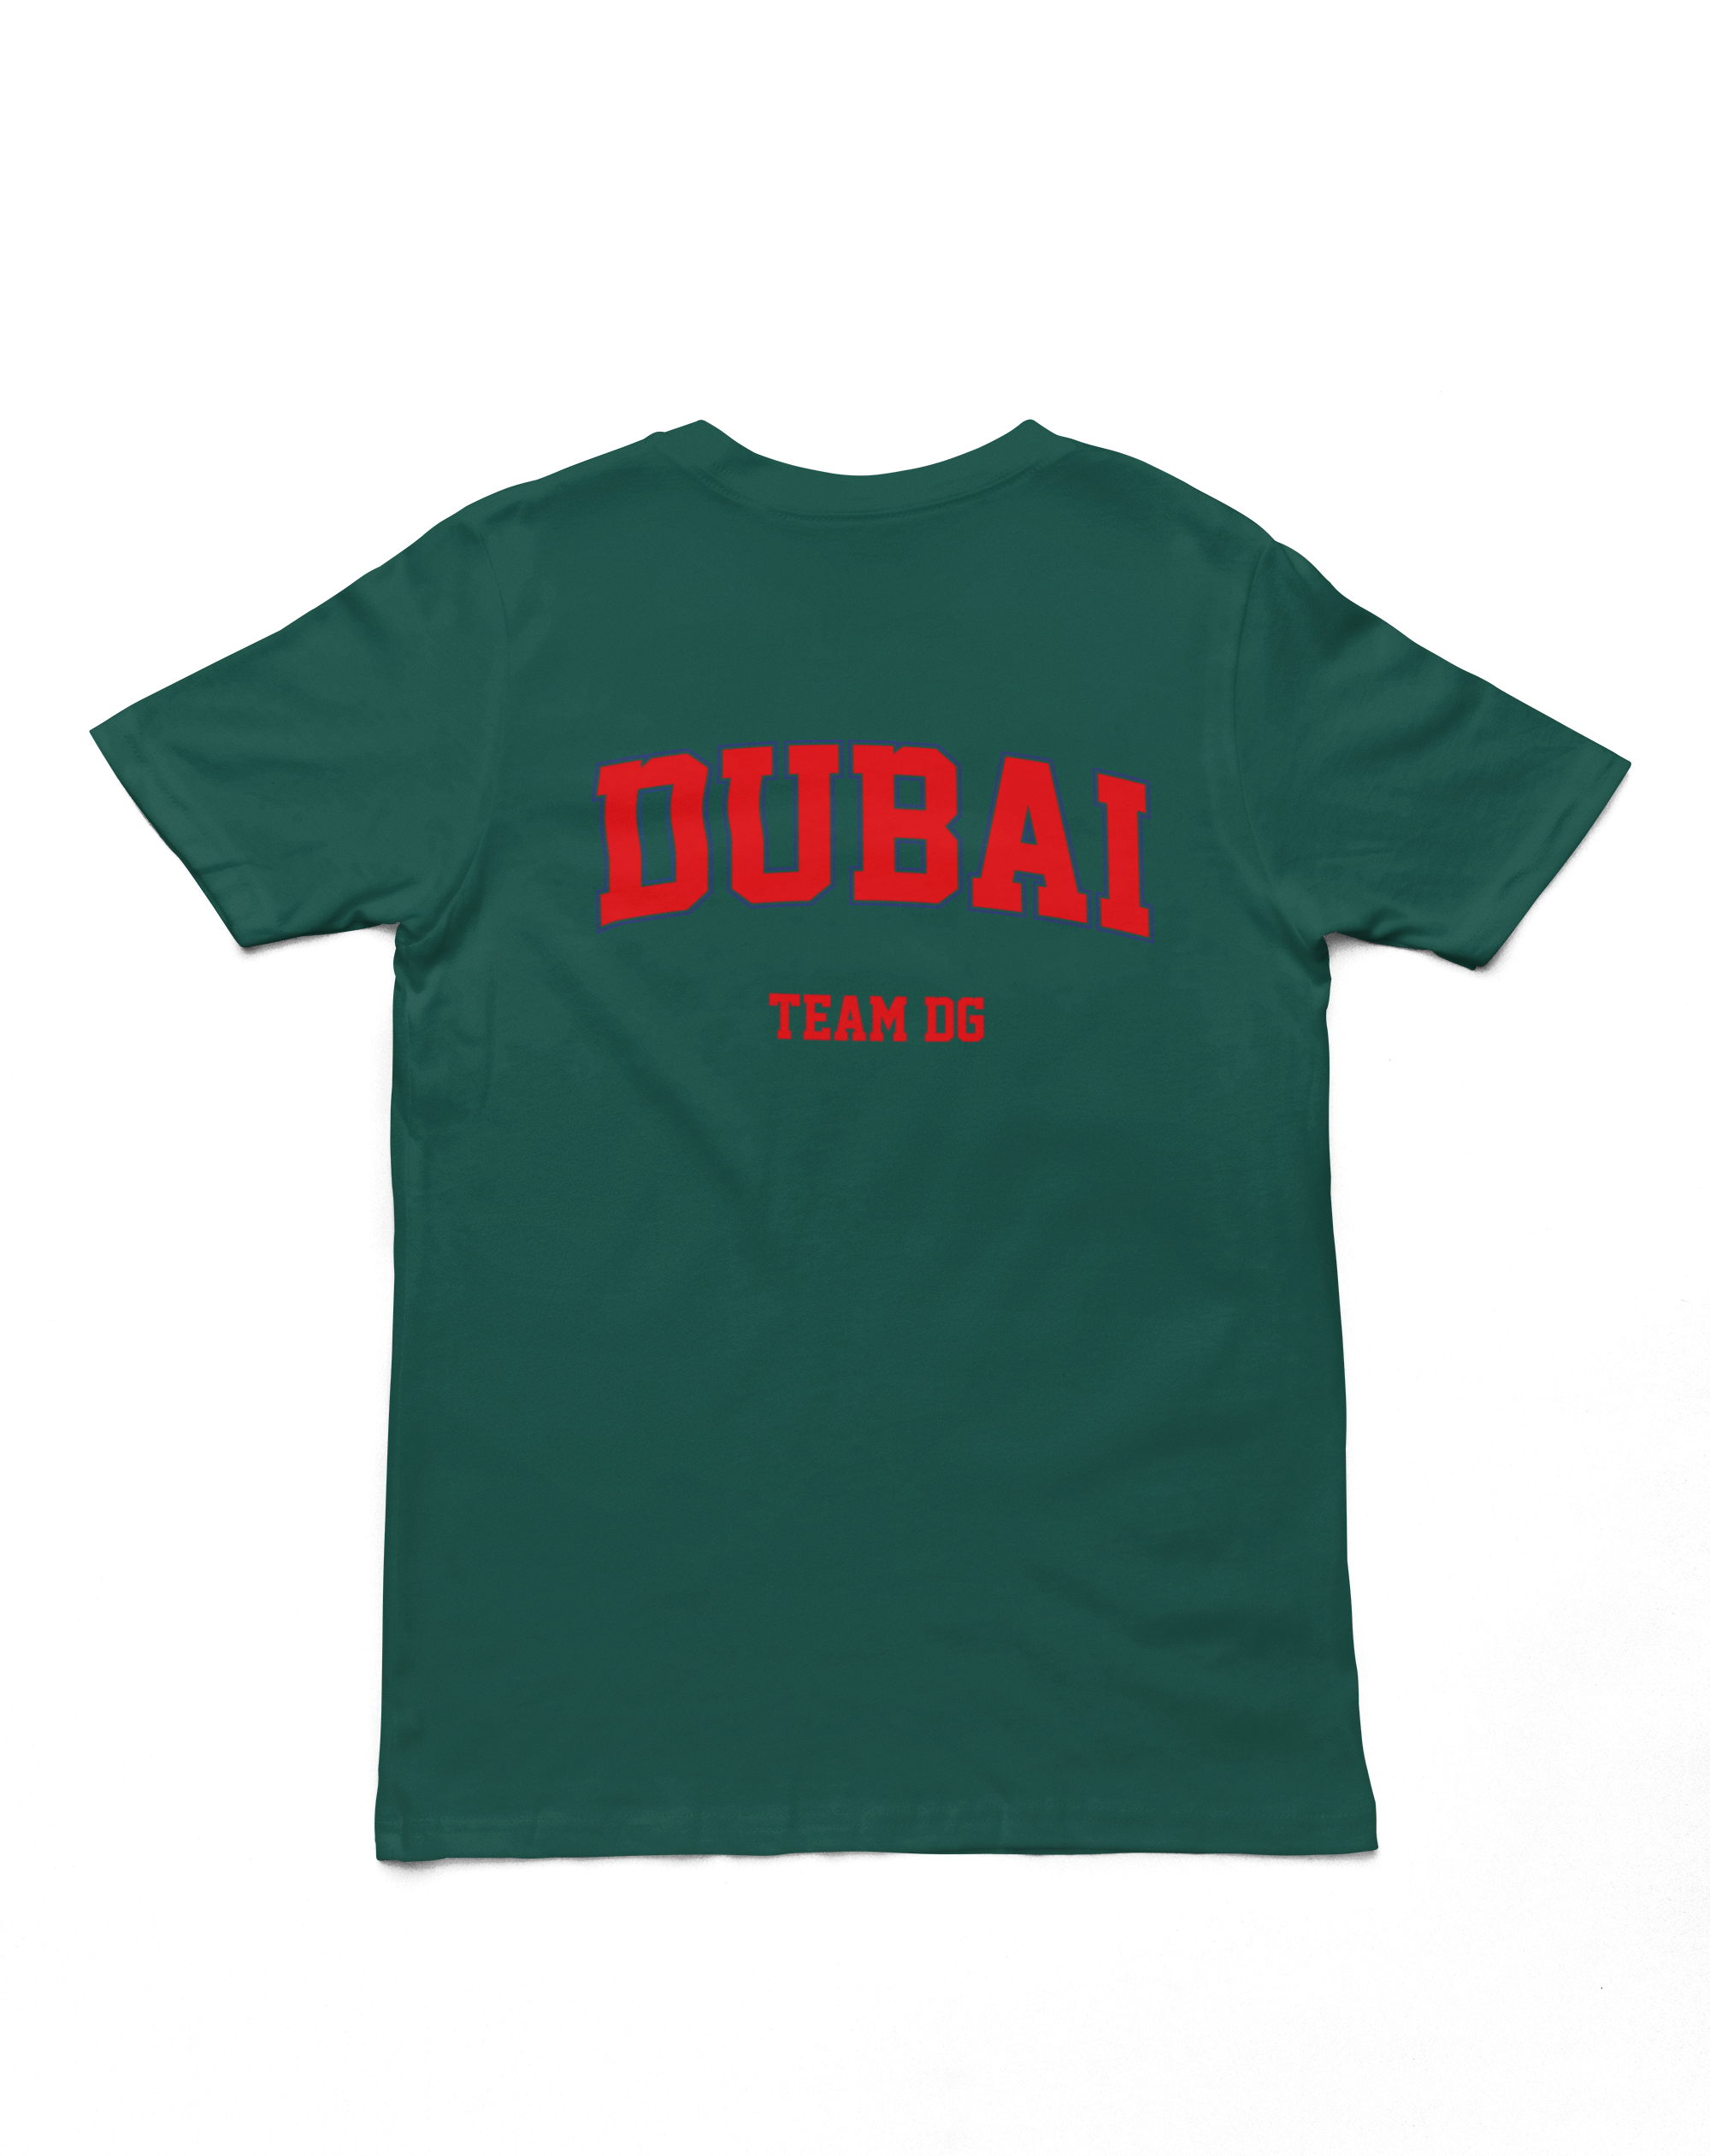 "DUBAI Team DG" - Shirt Man (Blau/Rot)